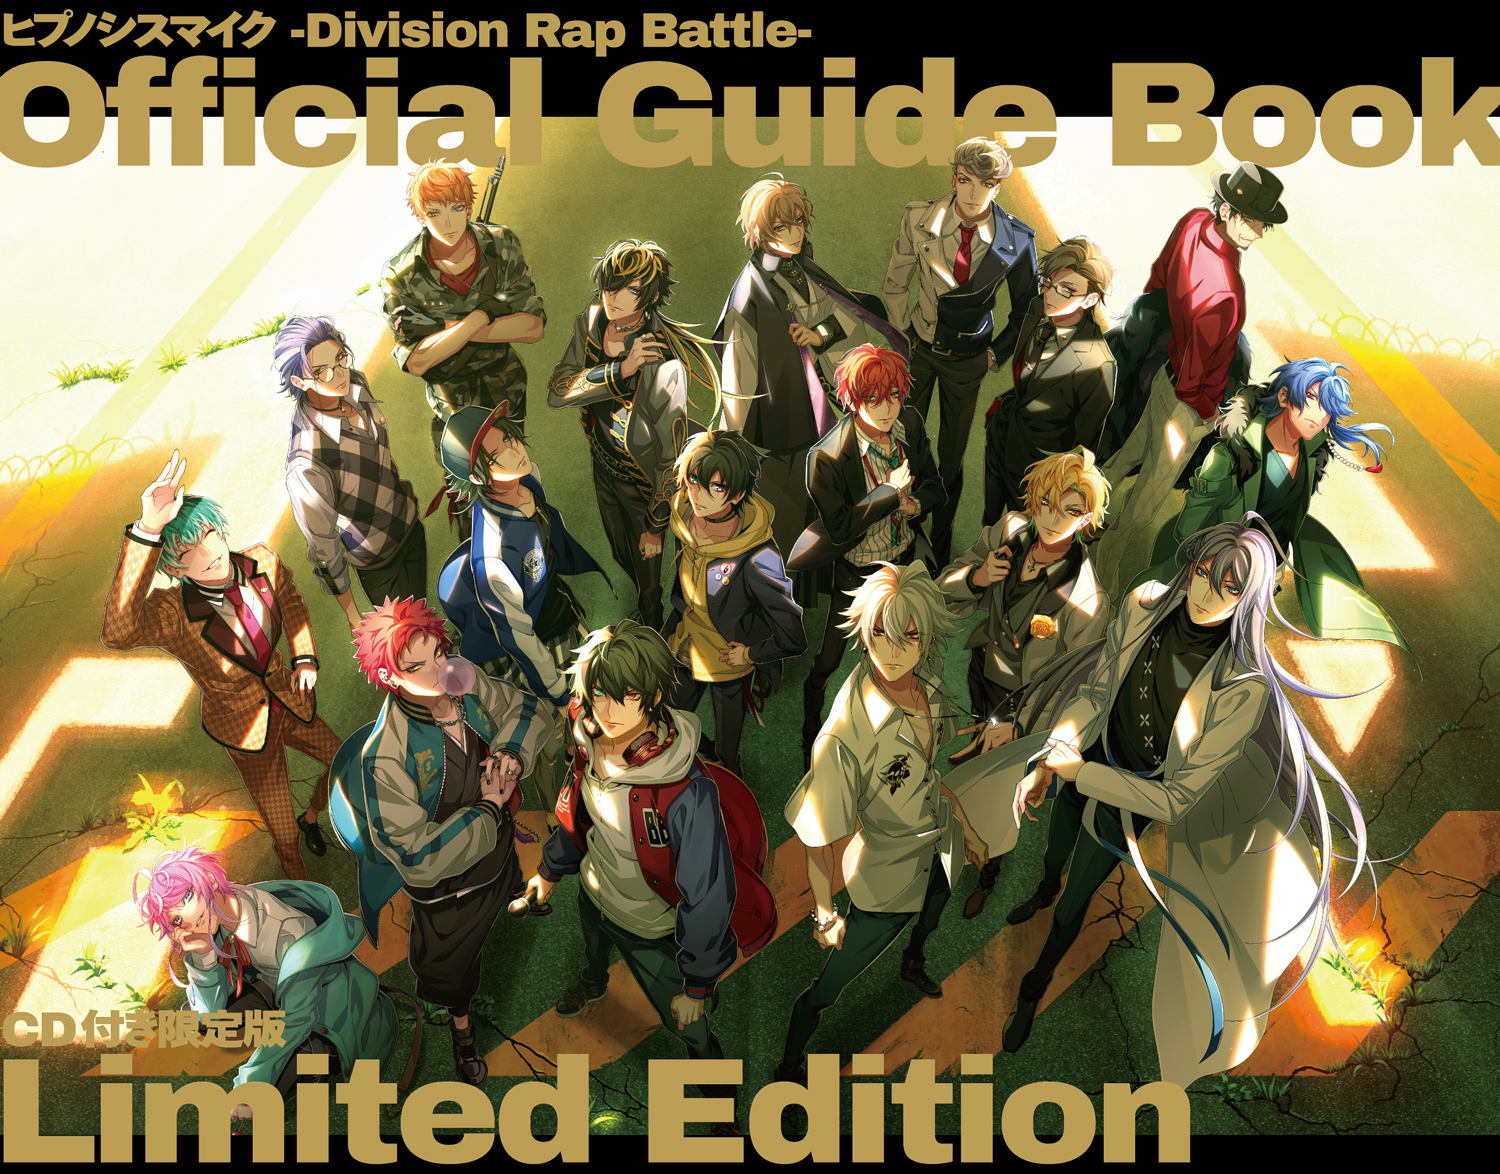 「ヒプノシスマイク-Division Rap Battle- Official Guide Book」新規描き下ろしイラスト